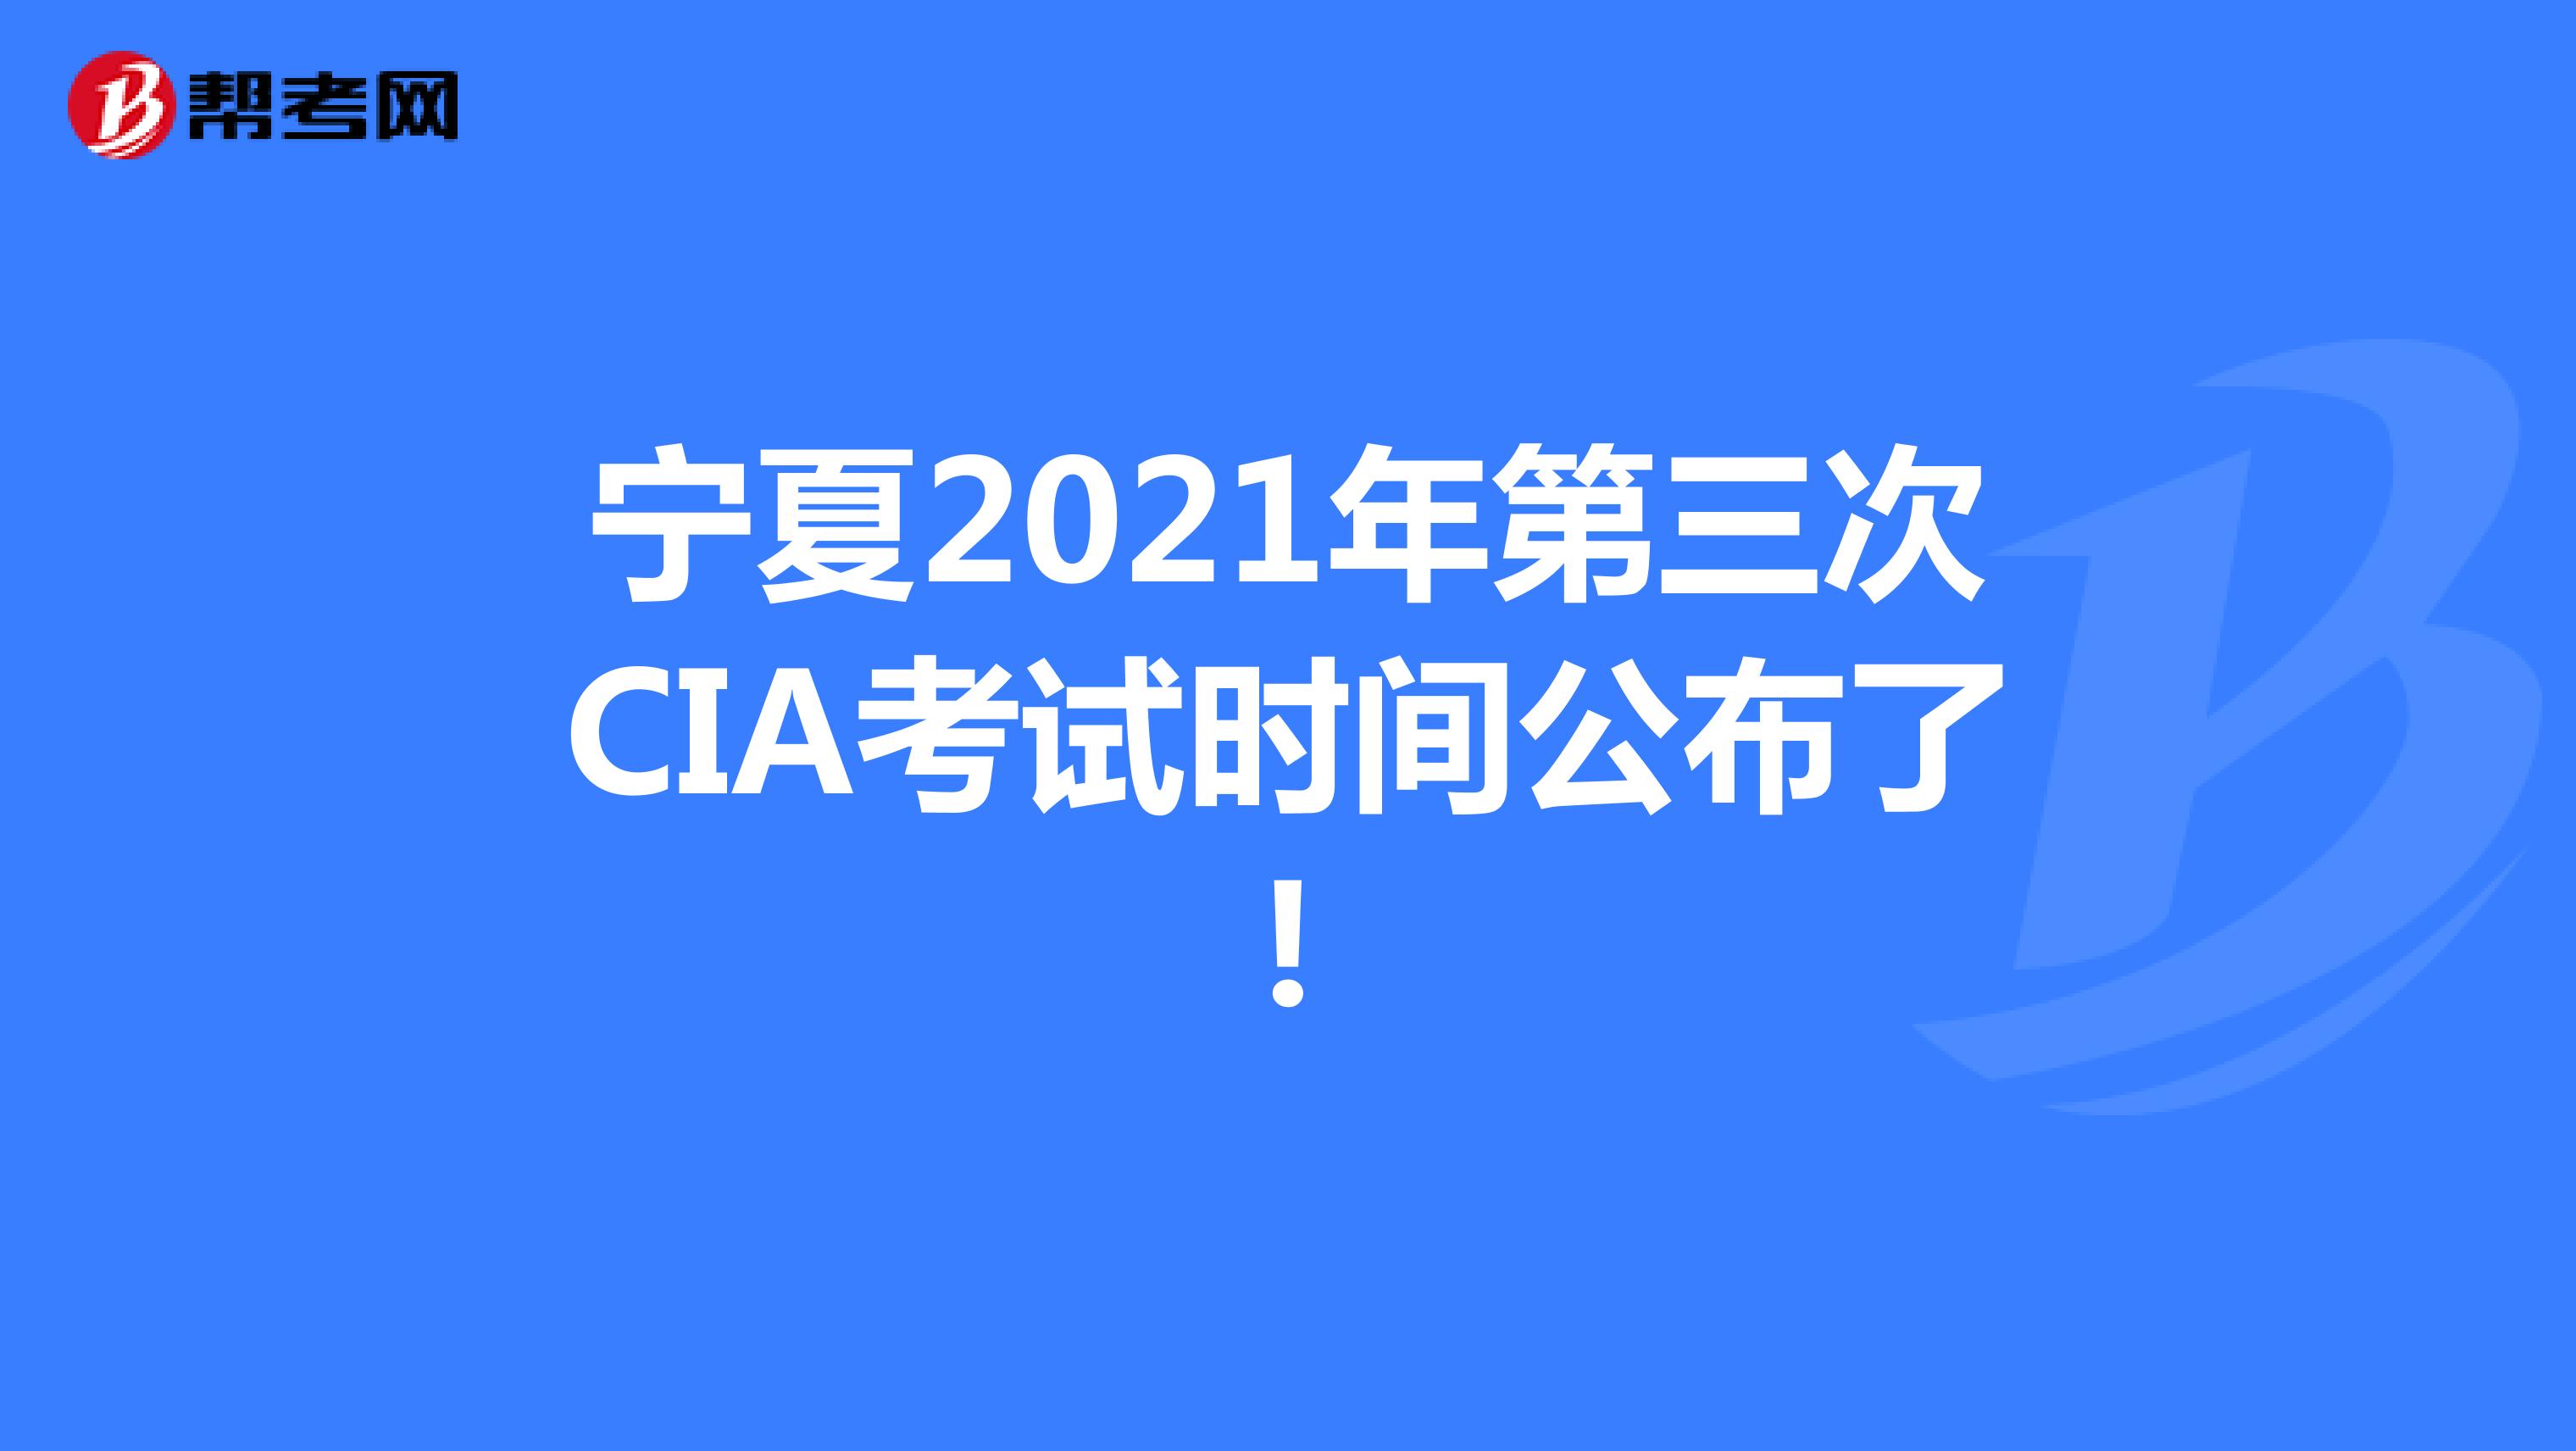 宁夏2021年第三次CIA考试时间公布了!